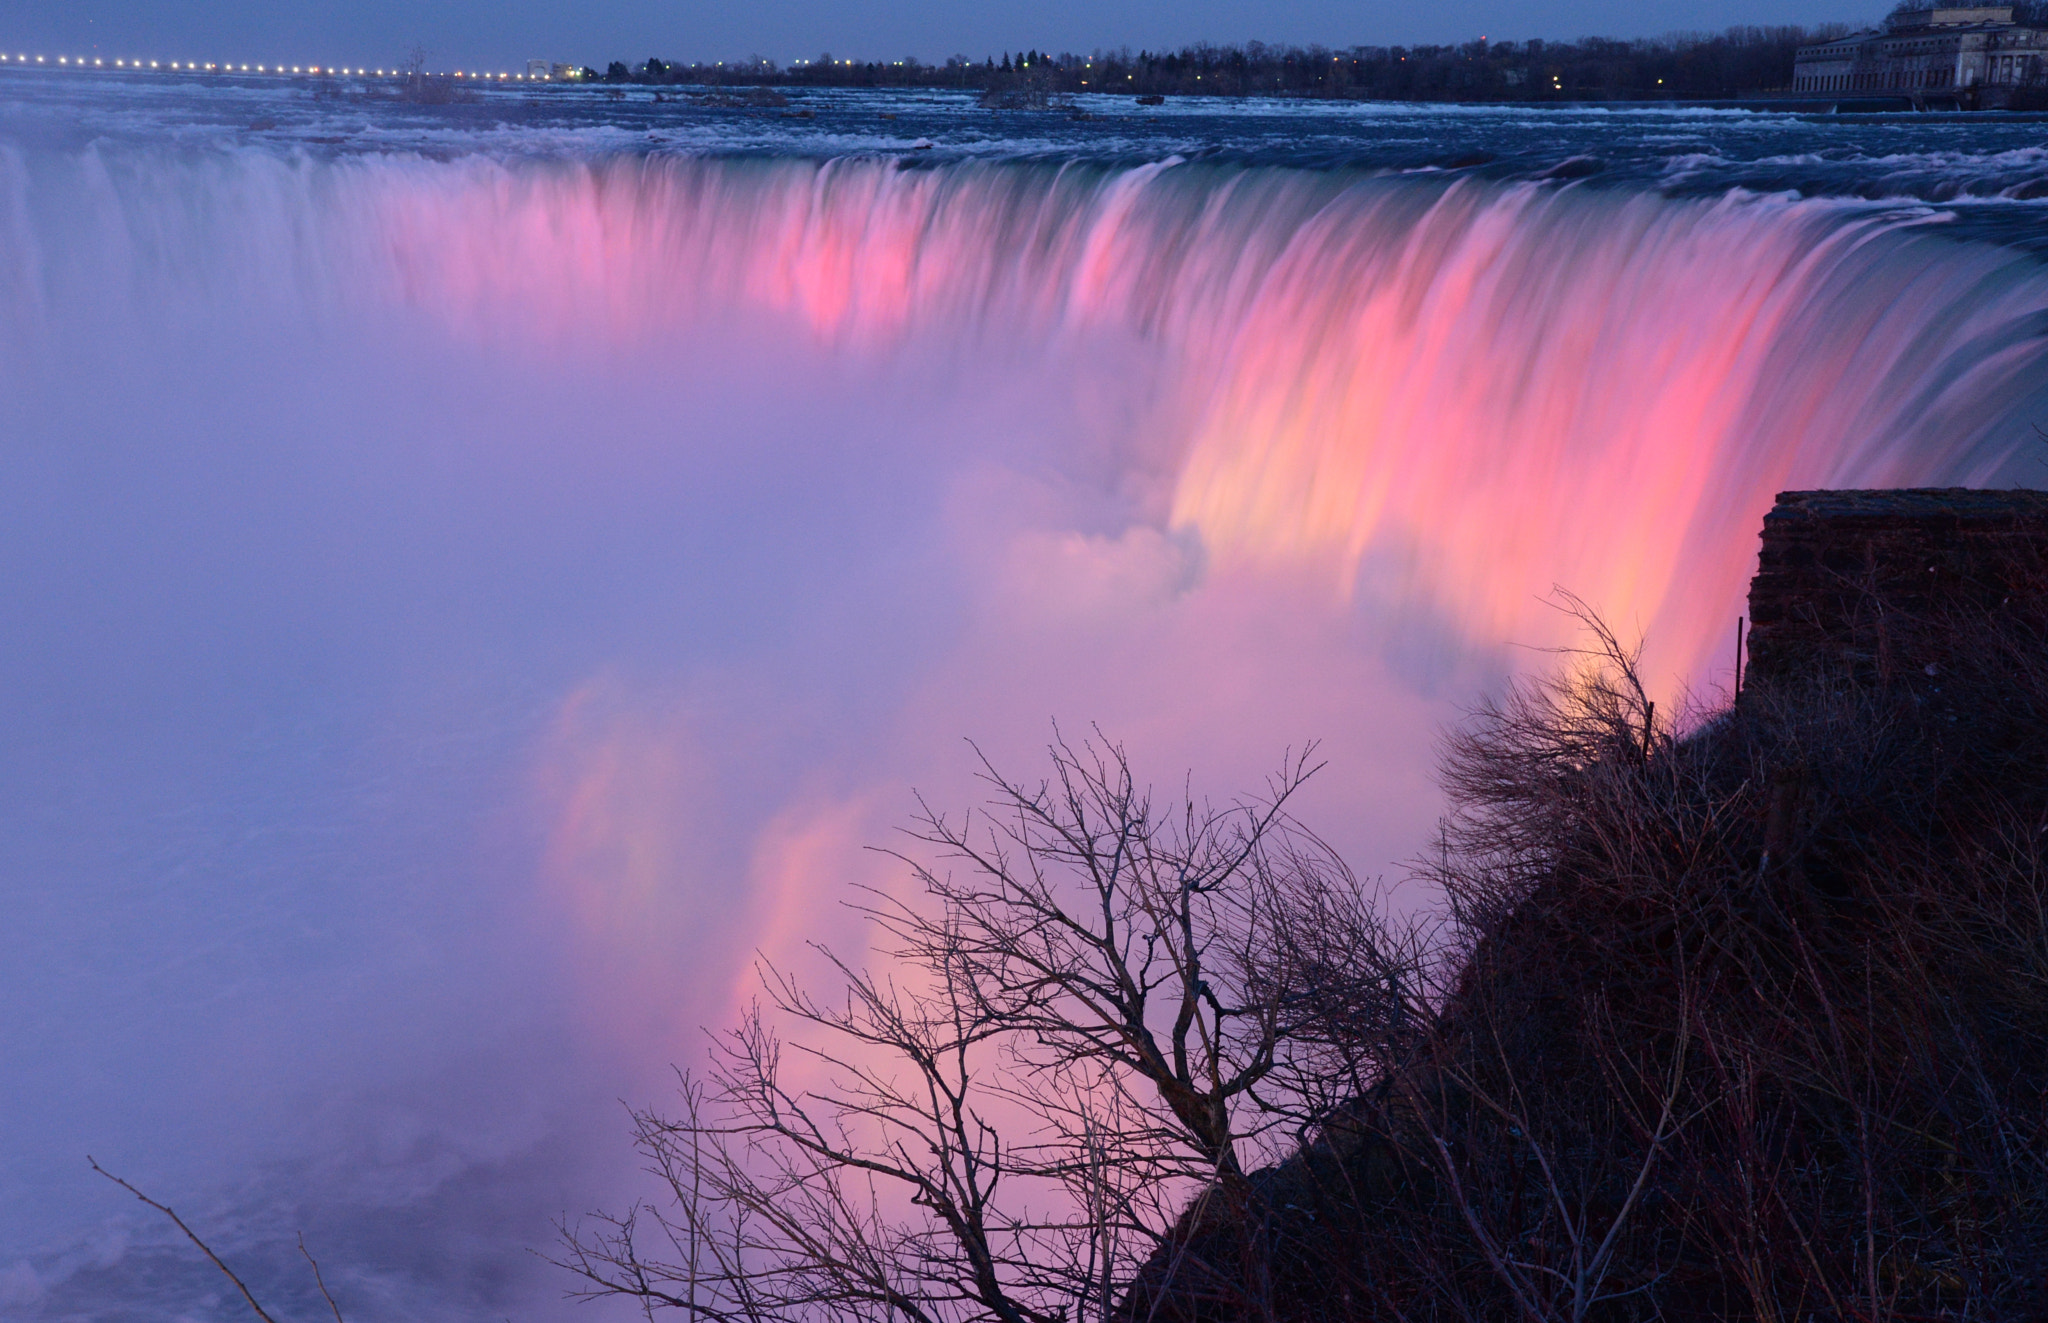 Nikon D610 + Sigma 24-105mm F4 DG OS HSM Art sample photo. Niagara-falls at evening photography